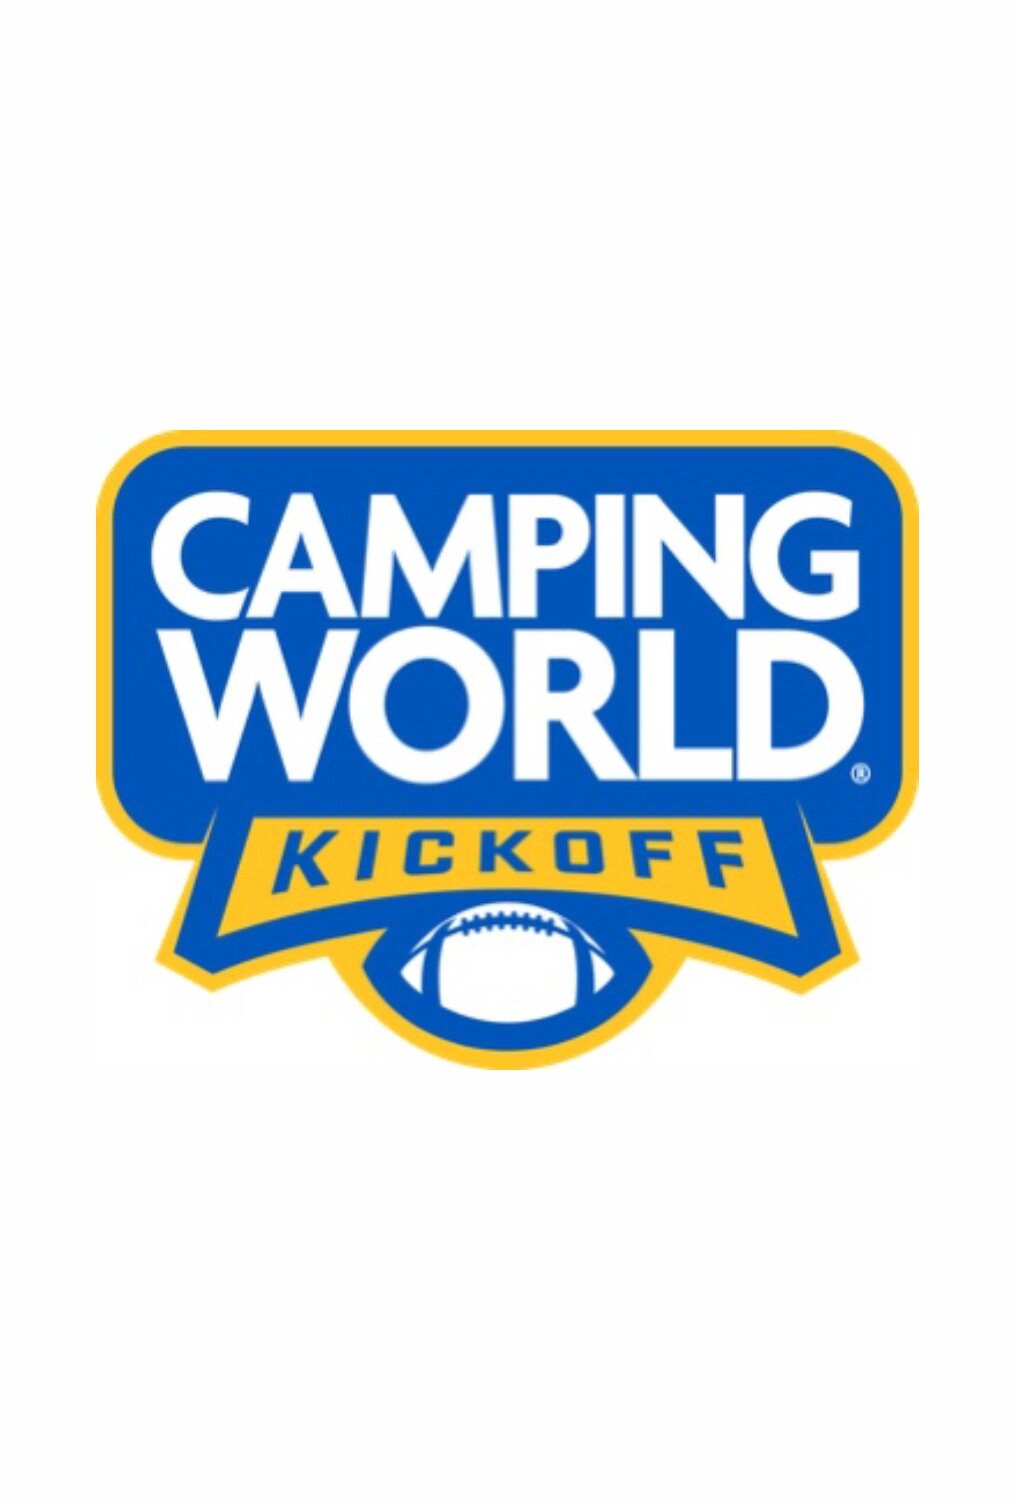 Camping World Kickoff TVmaze